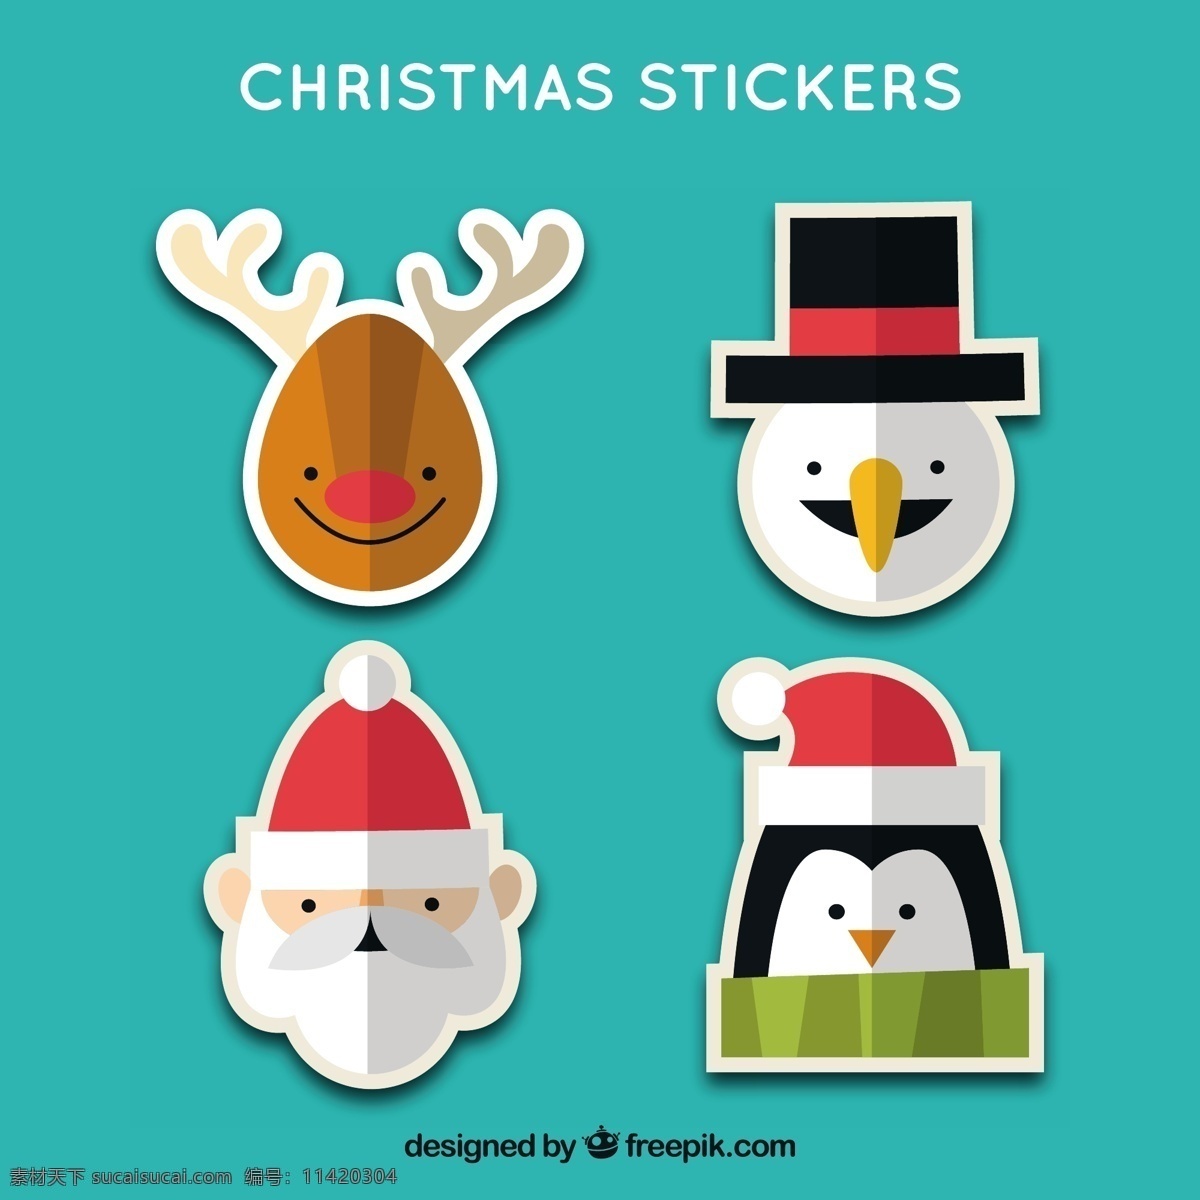 可爱 圣诞 stikers 字符 圣诞节 标签纸 卡片 圣诞快乐 冬天快乐 性格可爱 圣诞卡 节日 庆典 雪人 装饰 驯鹿 企鹅 节日快乐 人物 青色 天蓝色